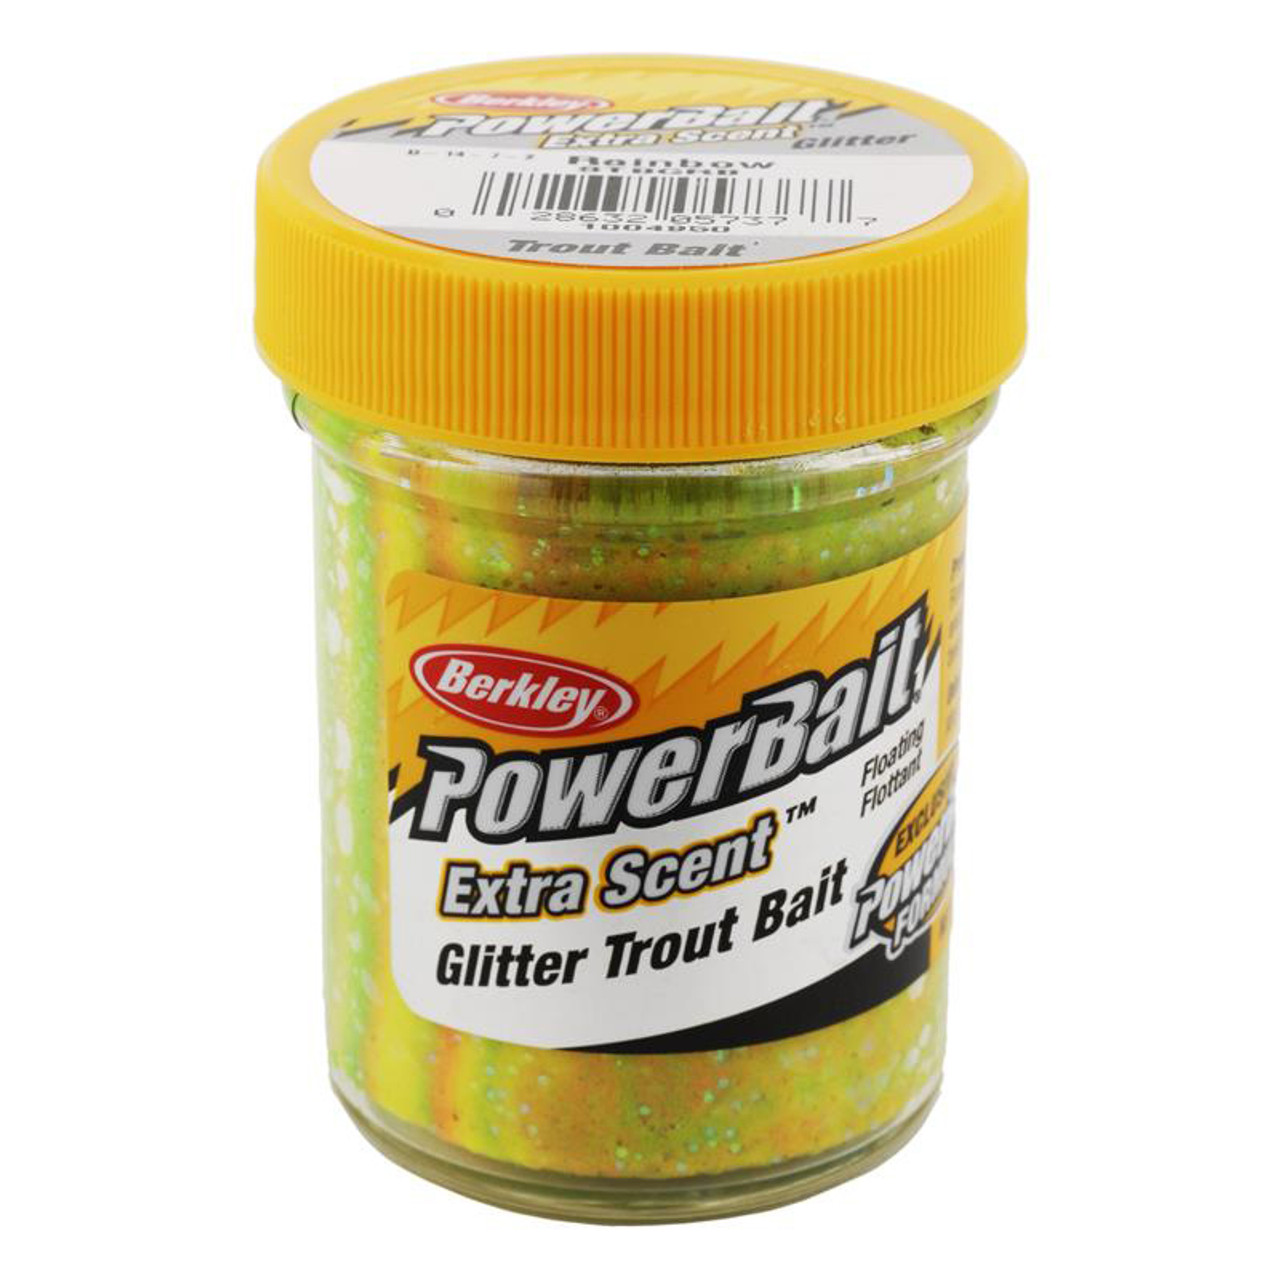 PowerBait Glitter Trout Bait Berkley Rainbow